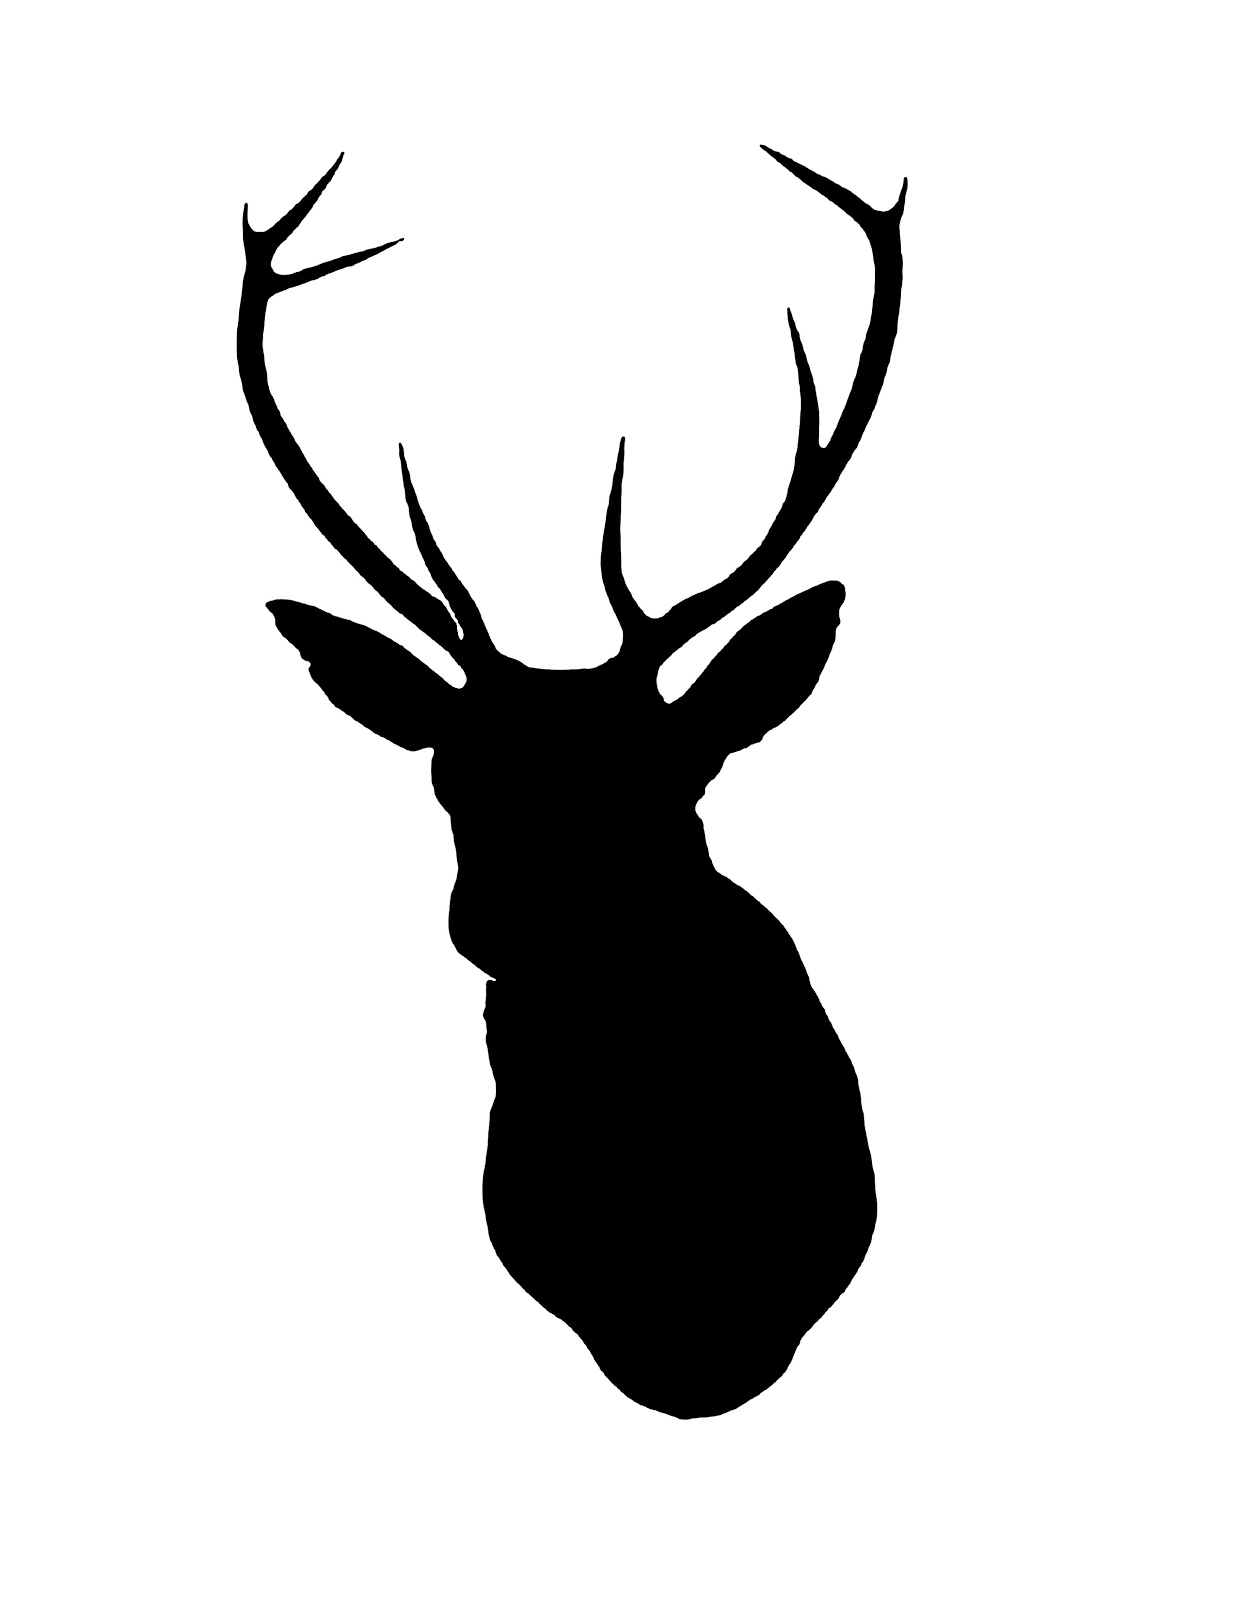 Best Photos of Reindeer Head Stencil - Reindeer Head Outline, Free ...